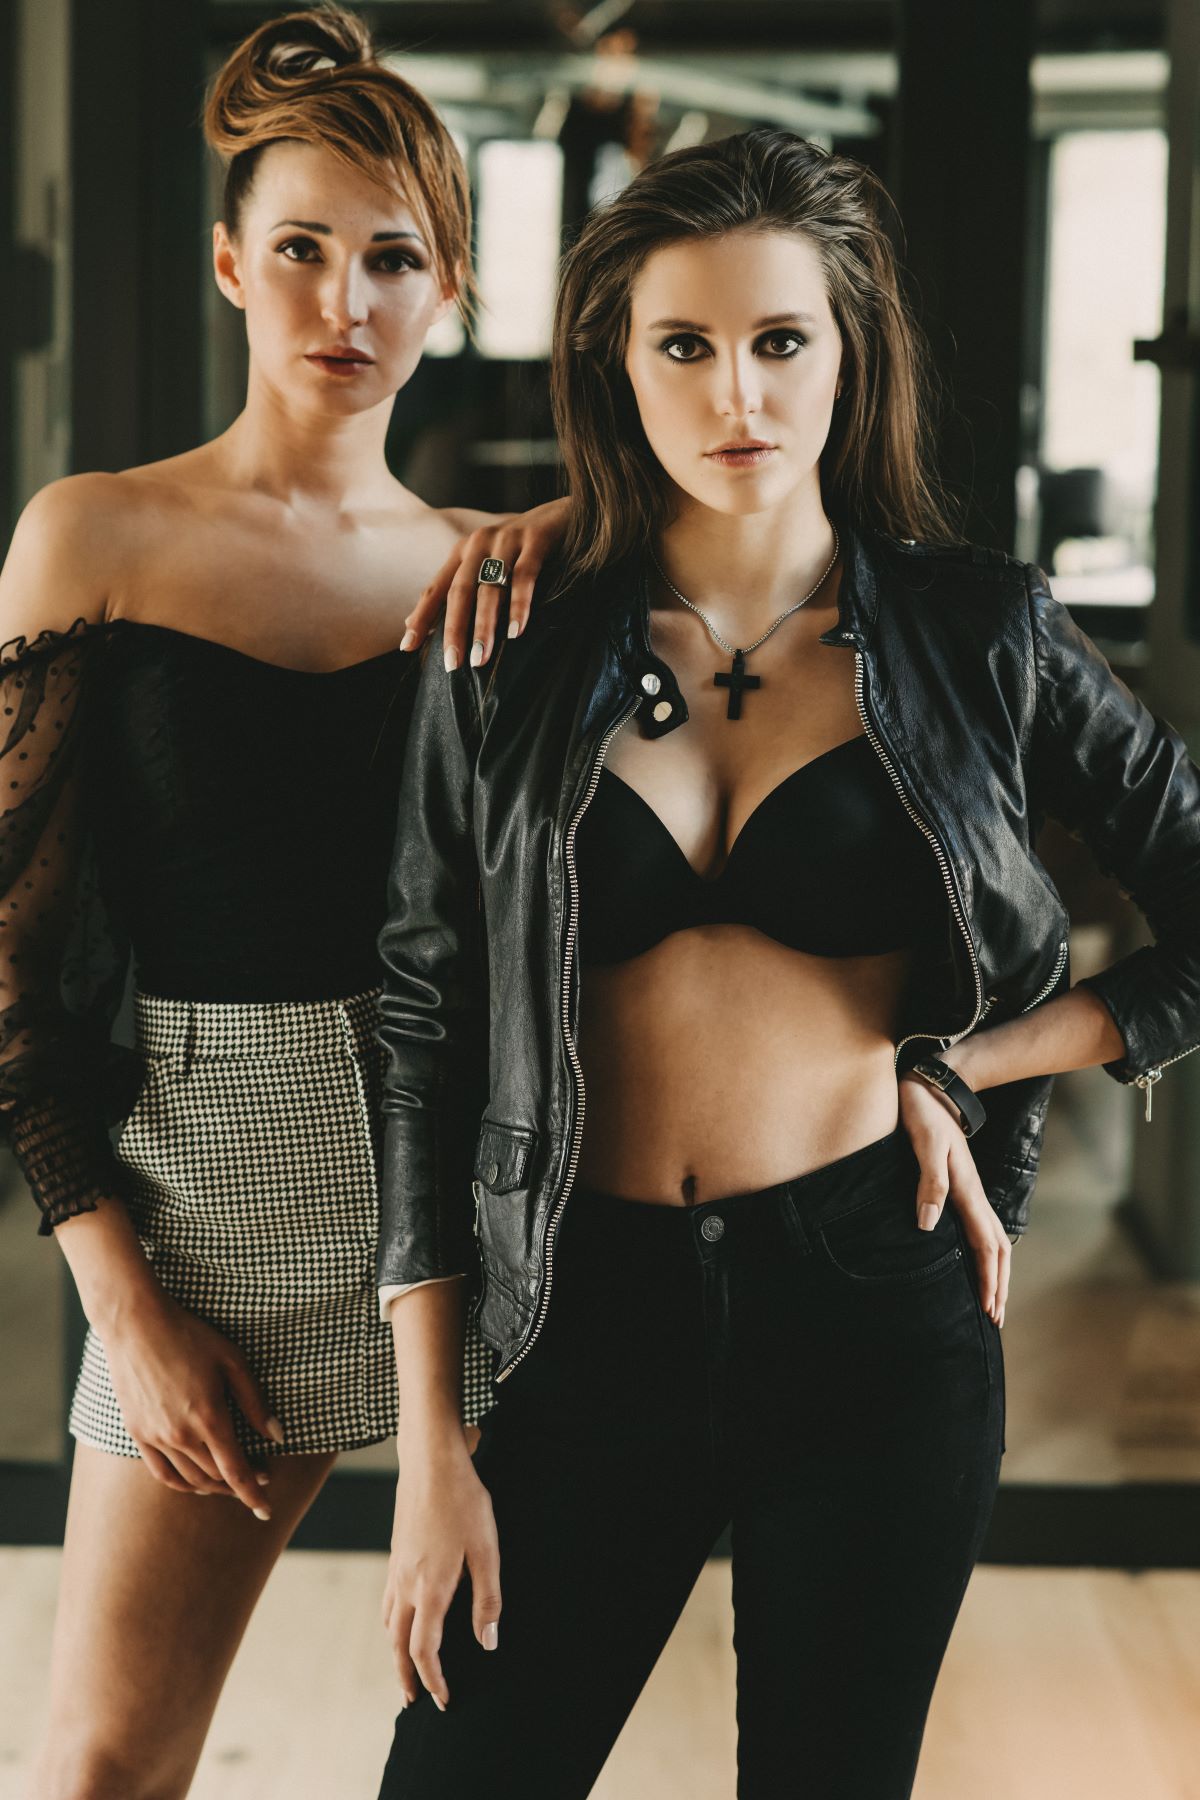 Anastasia und Charlene von firstmodel.de